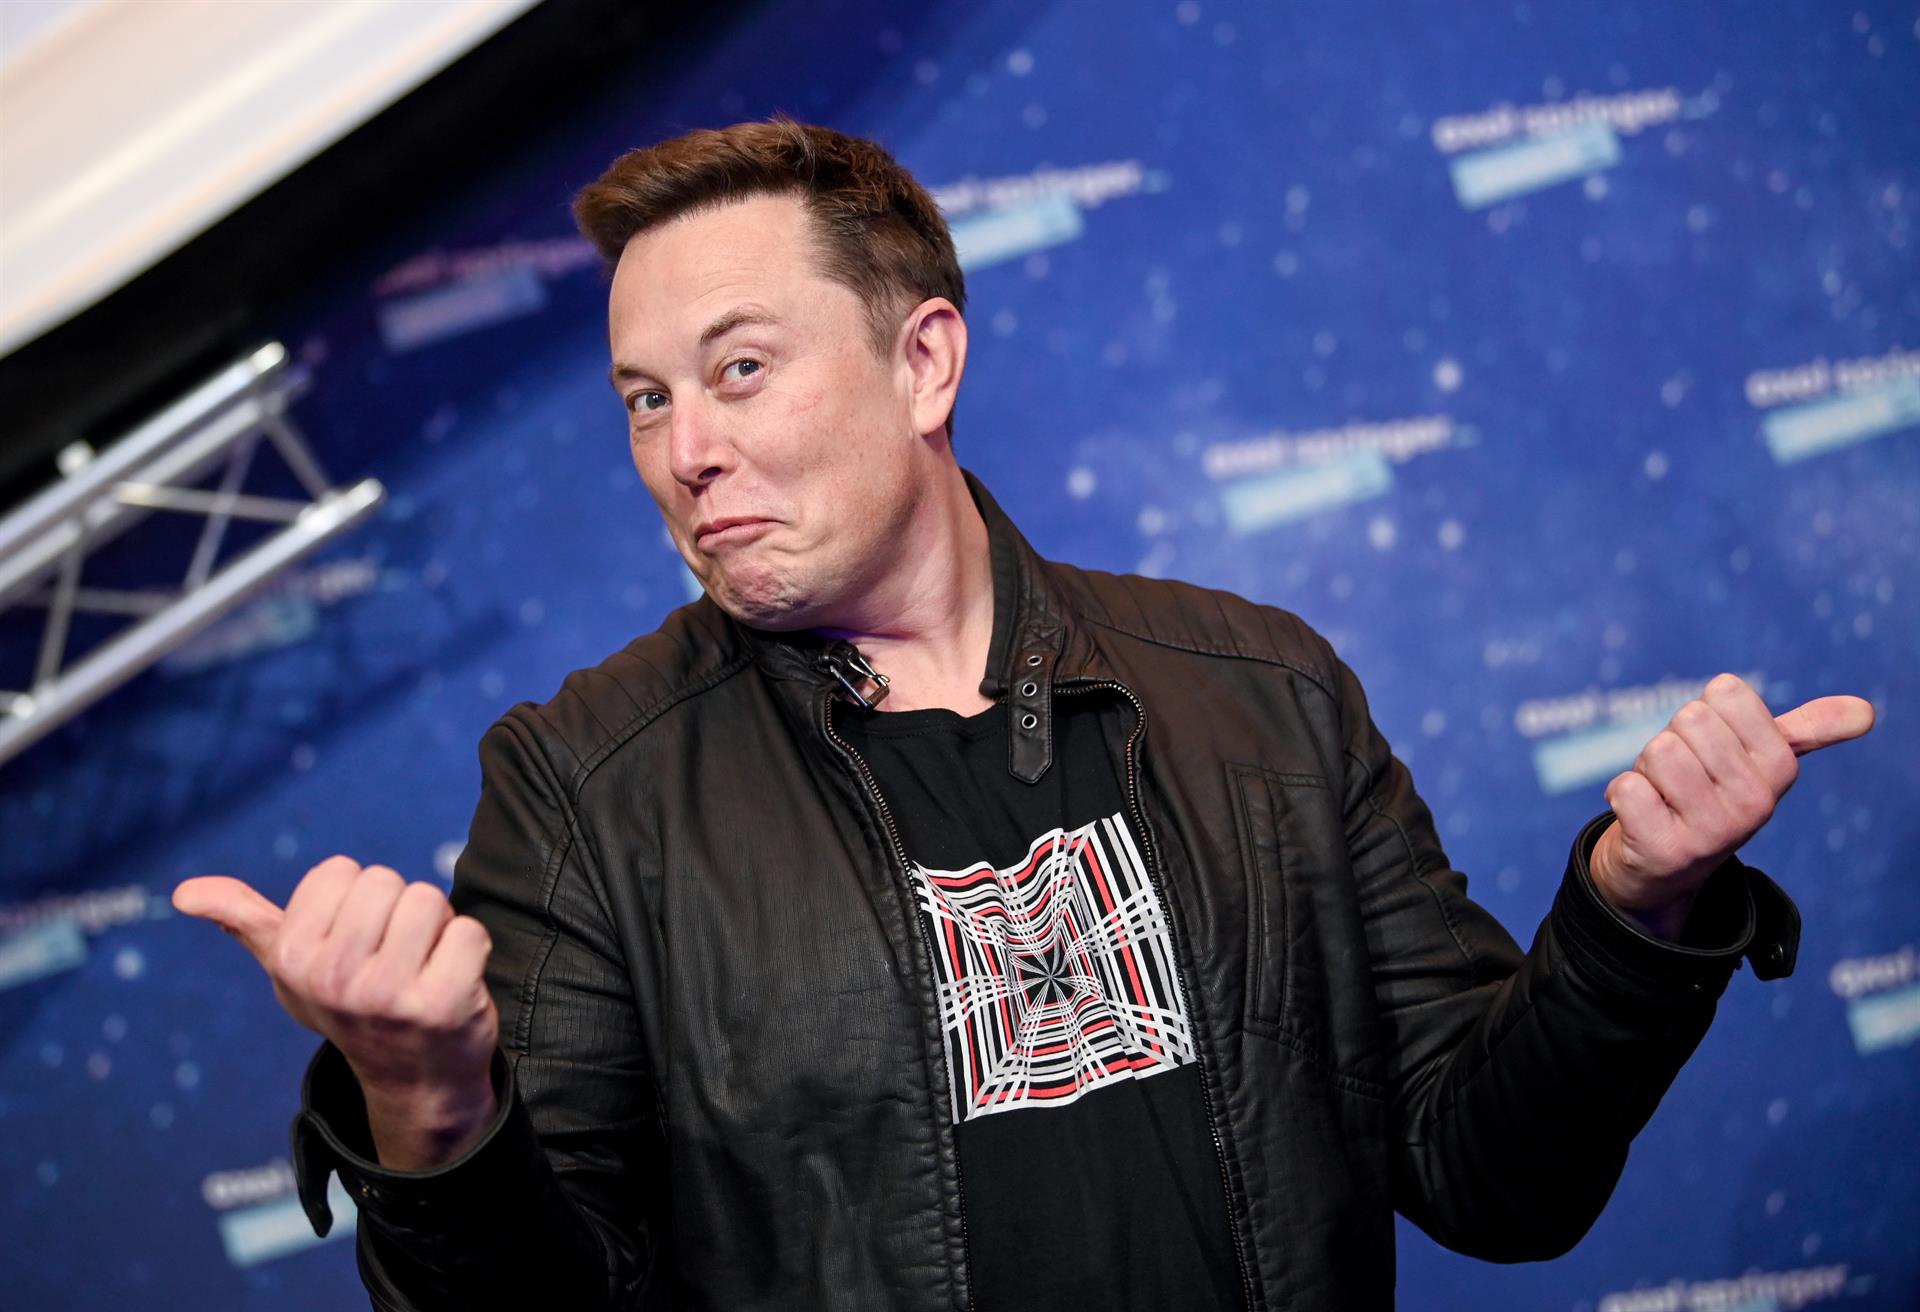 Fotografía de archivo del 1 de diciembre de 2020 que muestra al propietario de SpaceX y CEO de Tesla Elon Musk en la alfombra roja del premio Axel Springer, en Berlín (Alemania). EFE/ Britta Pedersen POOL/ ARCHIVO
